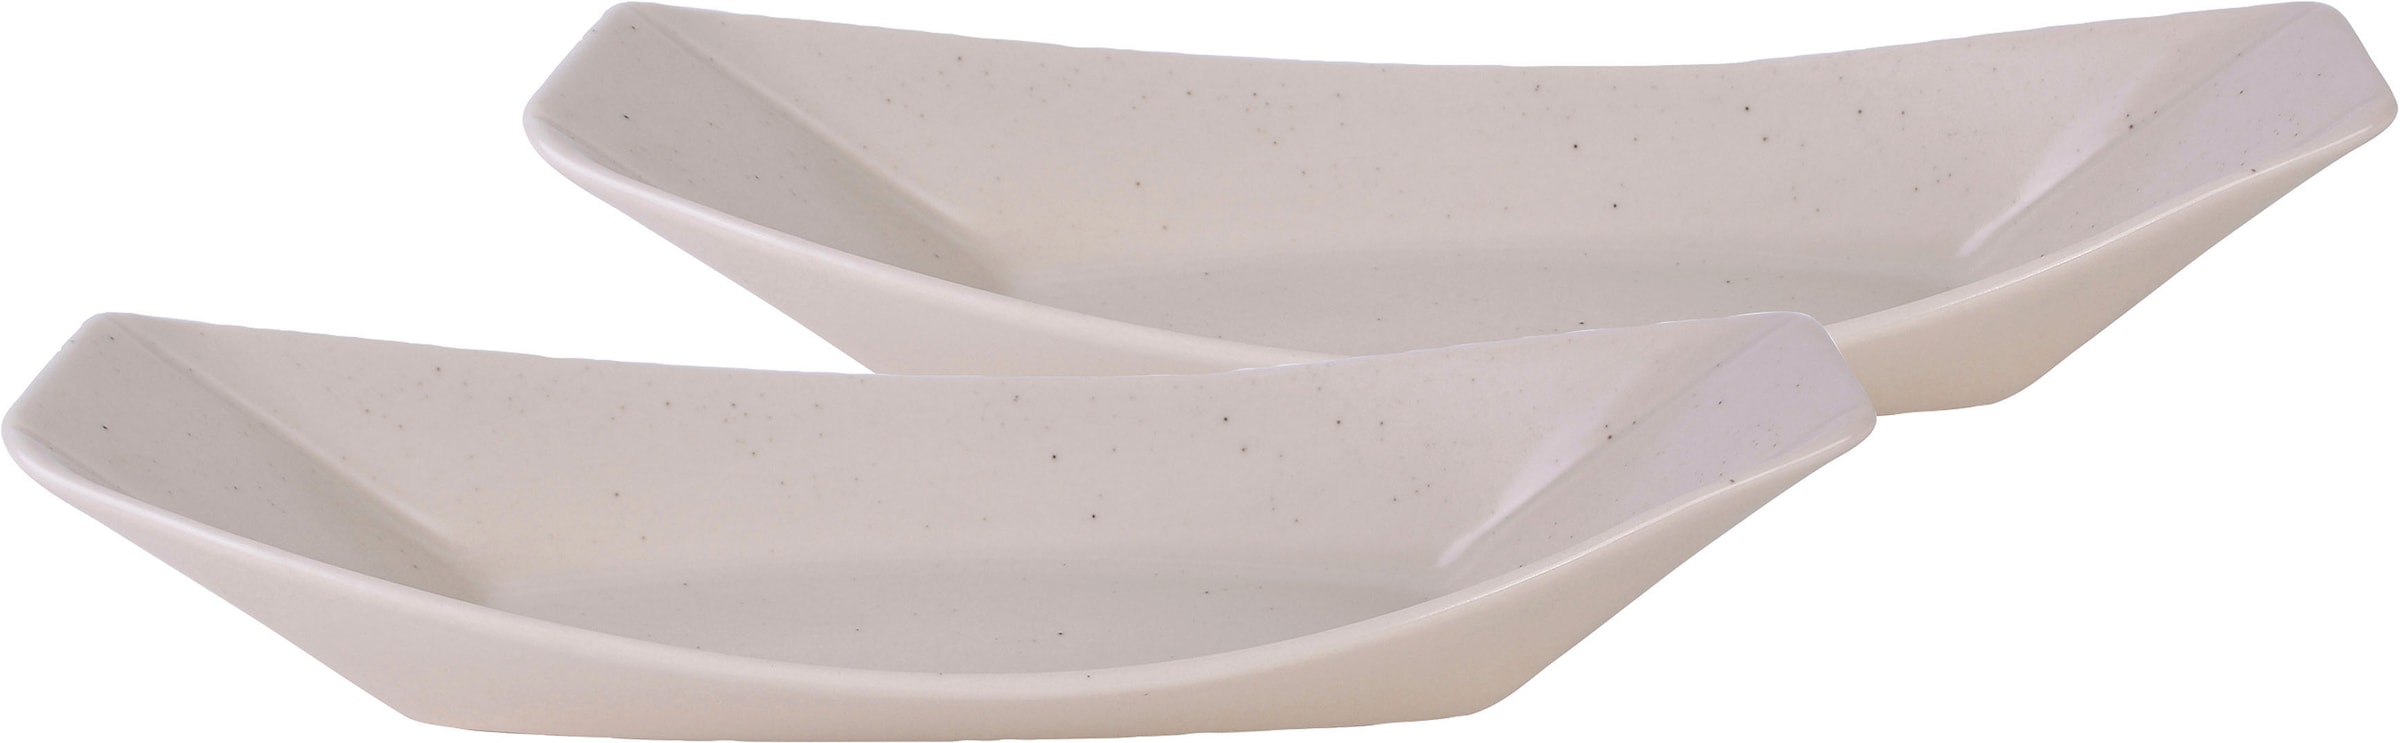 GILDE Schale »Boat«, 1 tlg., Antik-Finish, aus Struktur, Alumimium, ideal zum OTTO bei Dekorieren silberfarbene